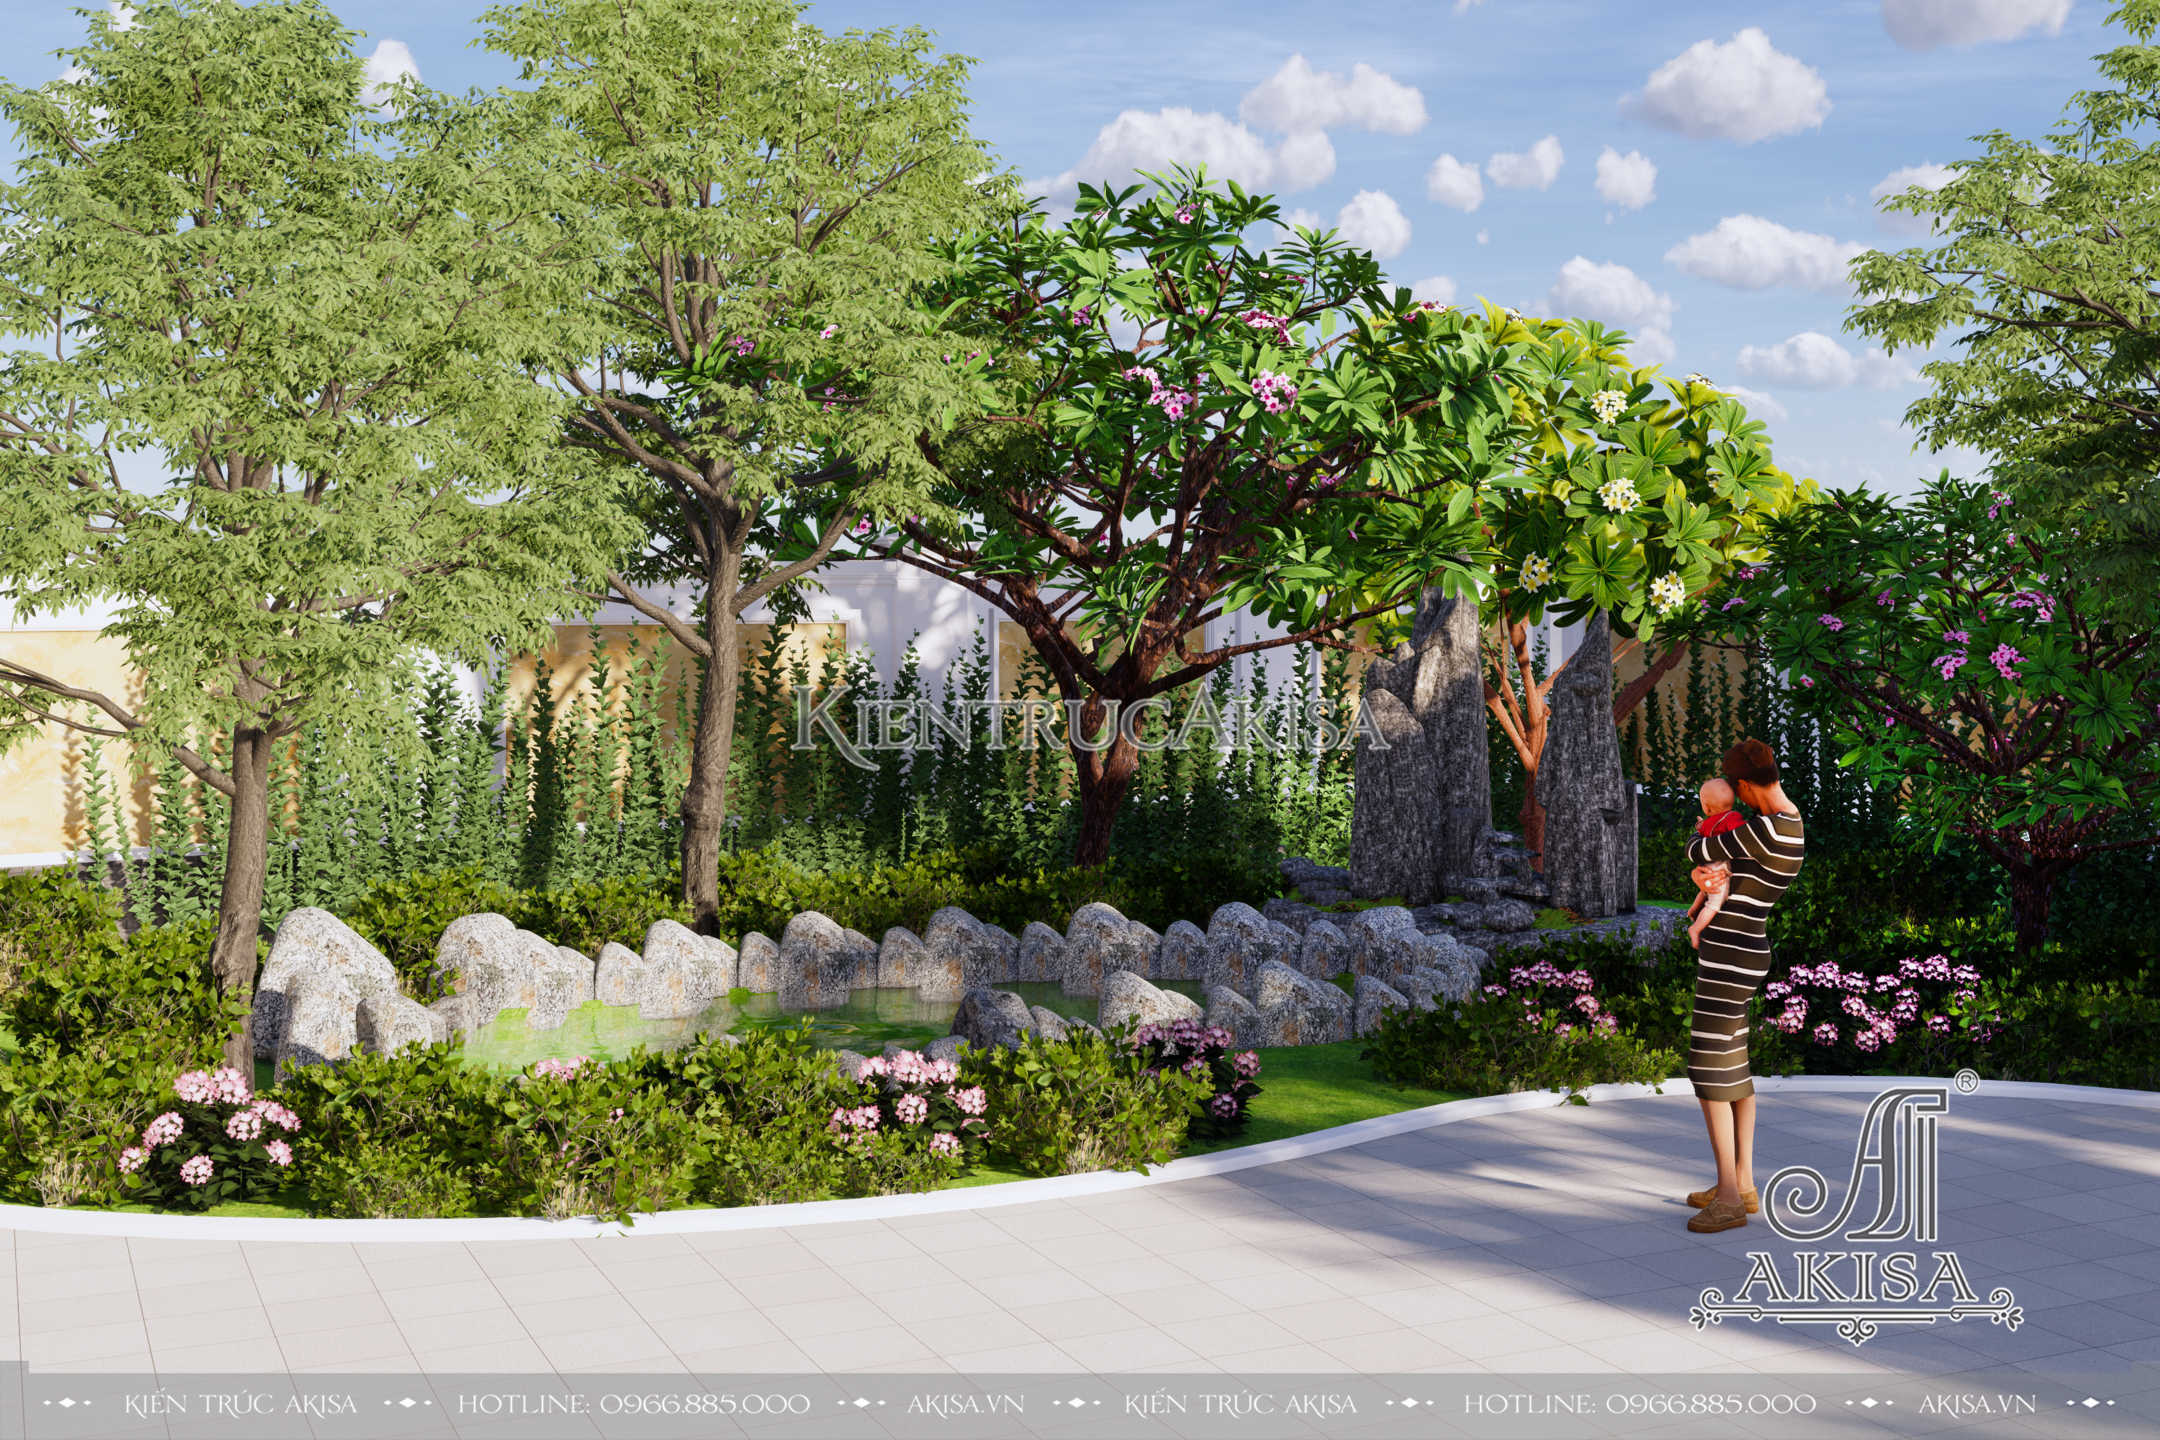 Không gian sân vườn được thiết kế với nhiều cây xanh kết hợp với hòn non bộ tạo nên cảnh quan đẹp mắt, sinh động